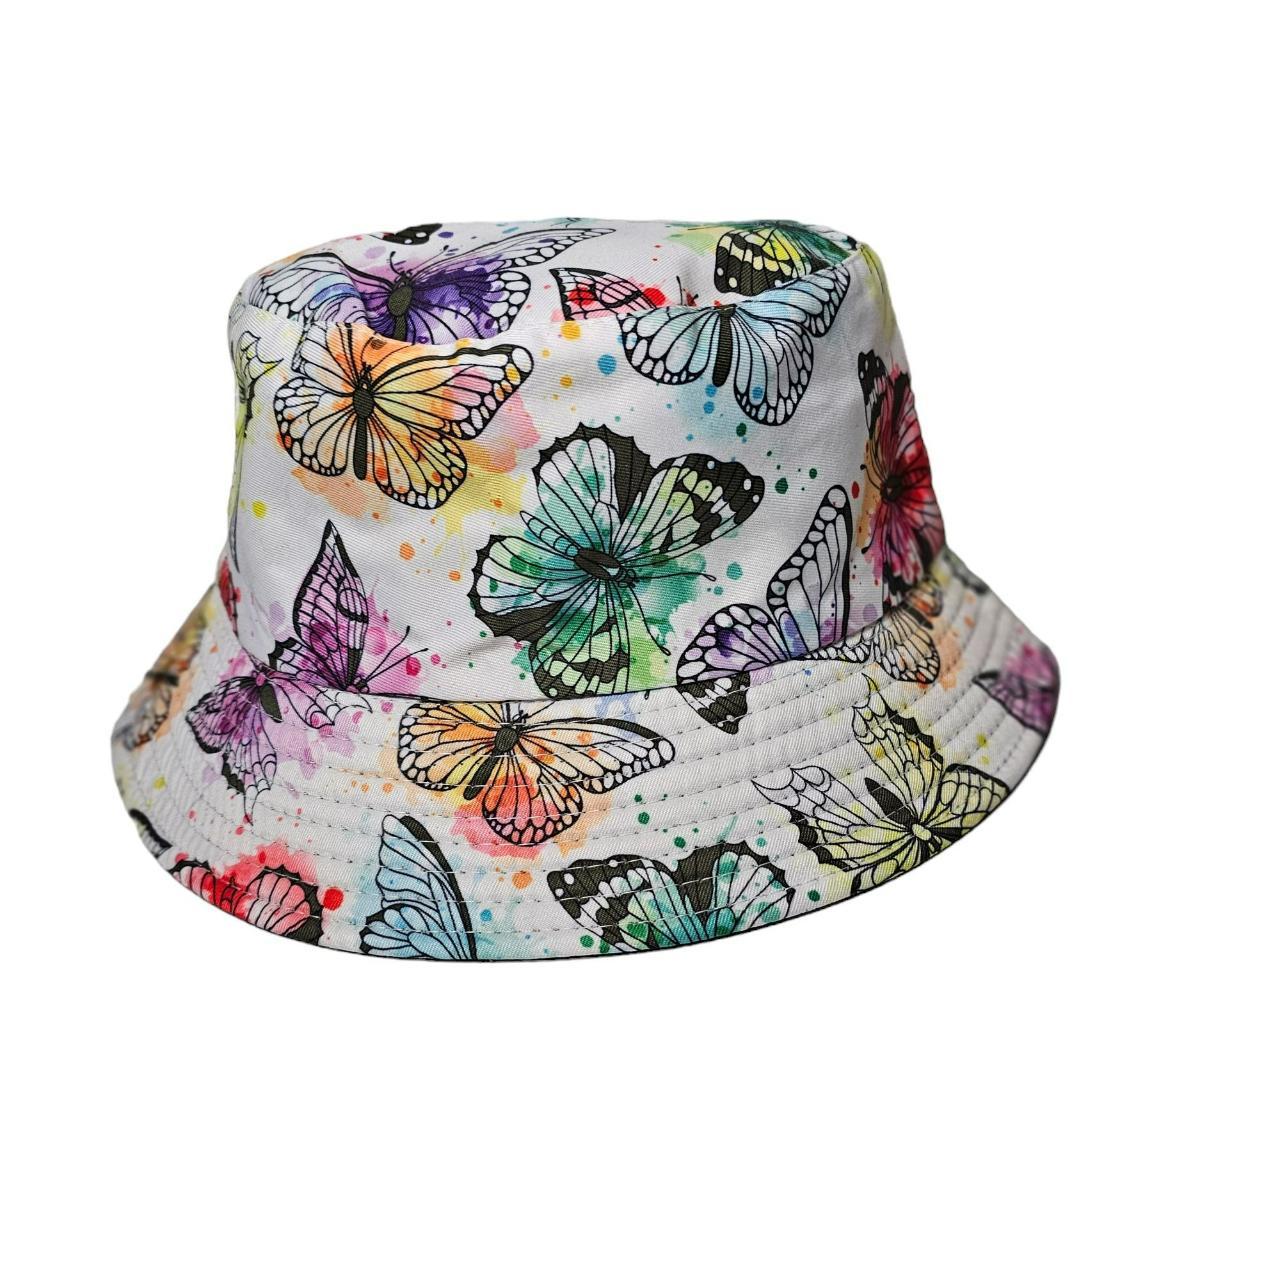 New Watercolor Butterfly Bucket Hat Brand New a... - Depop